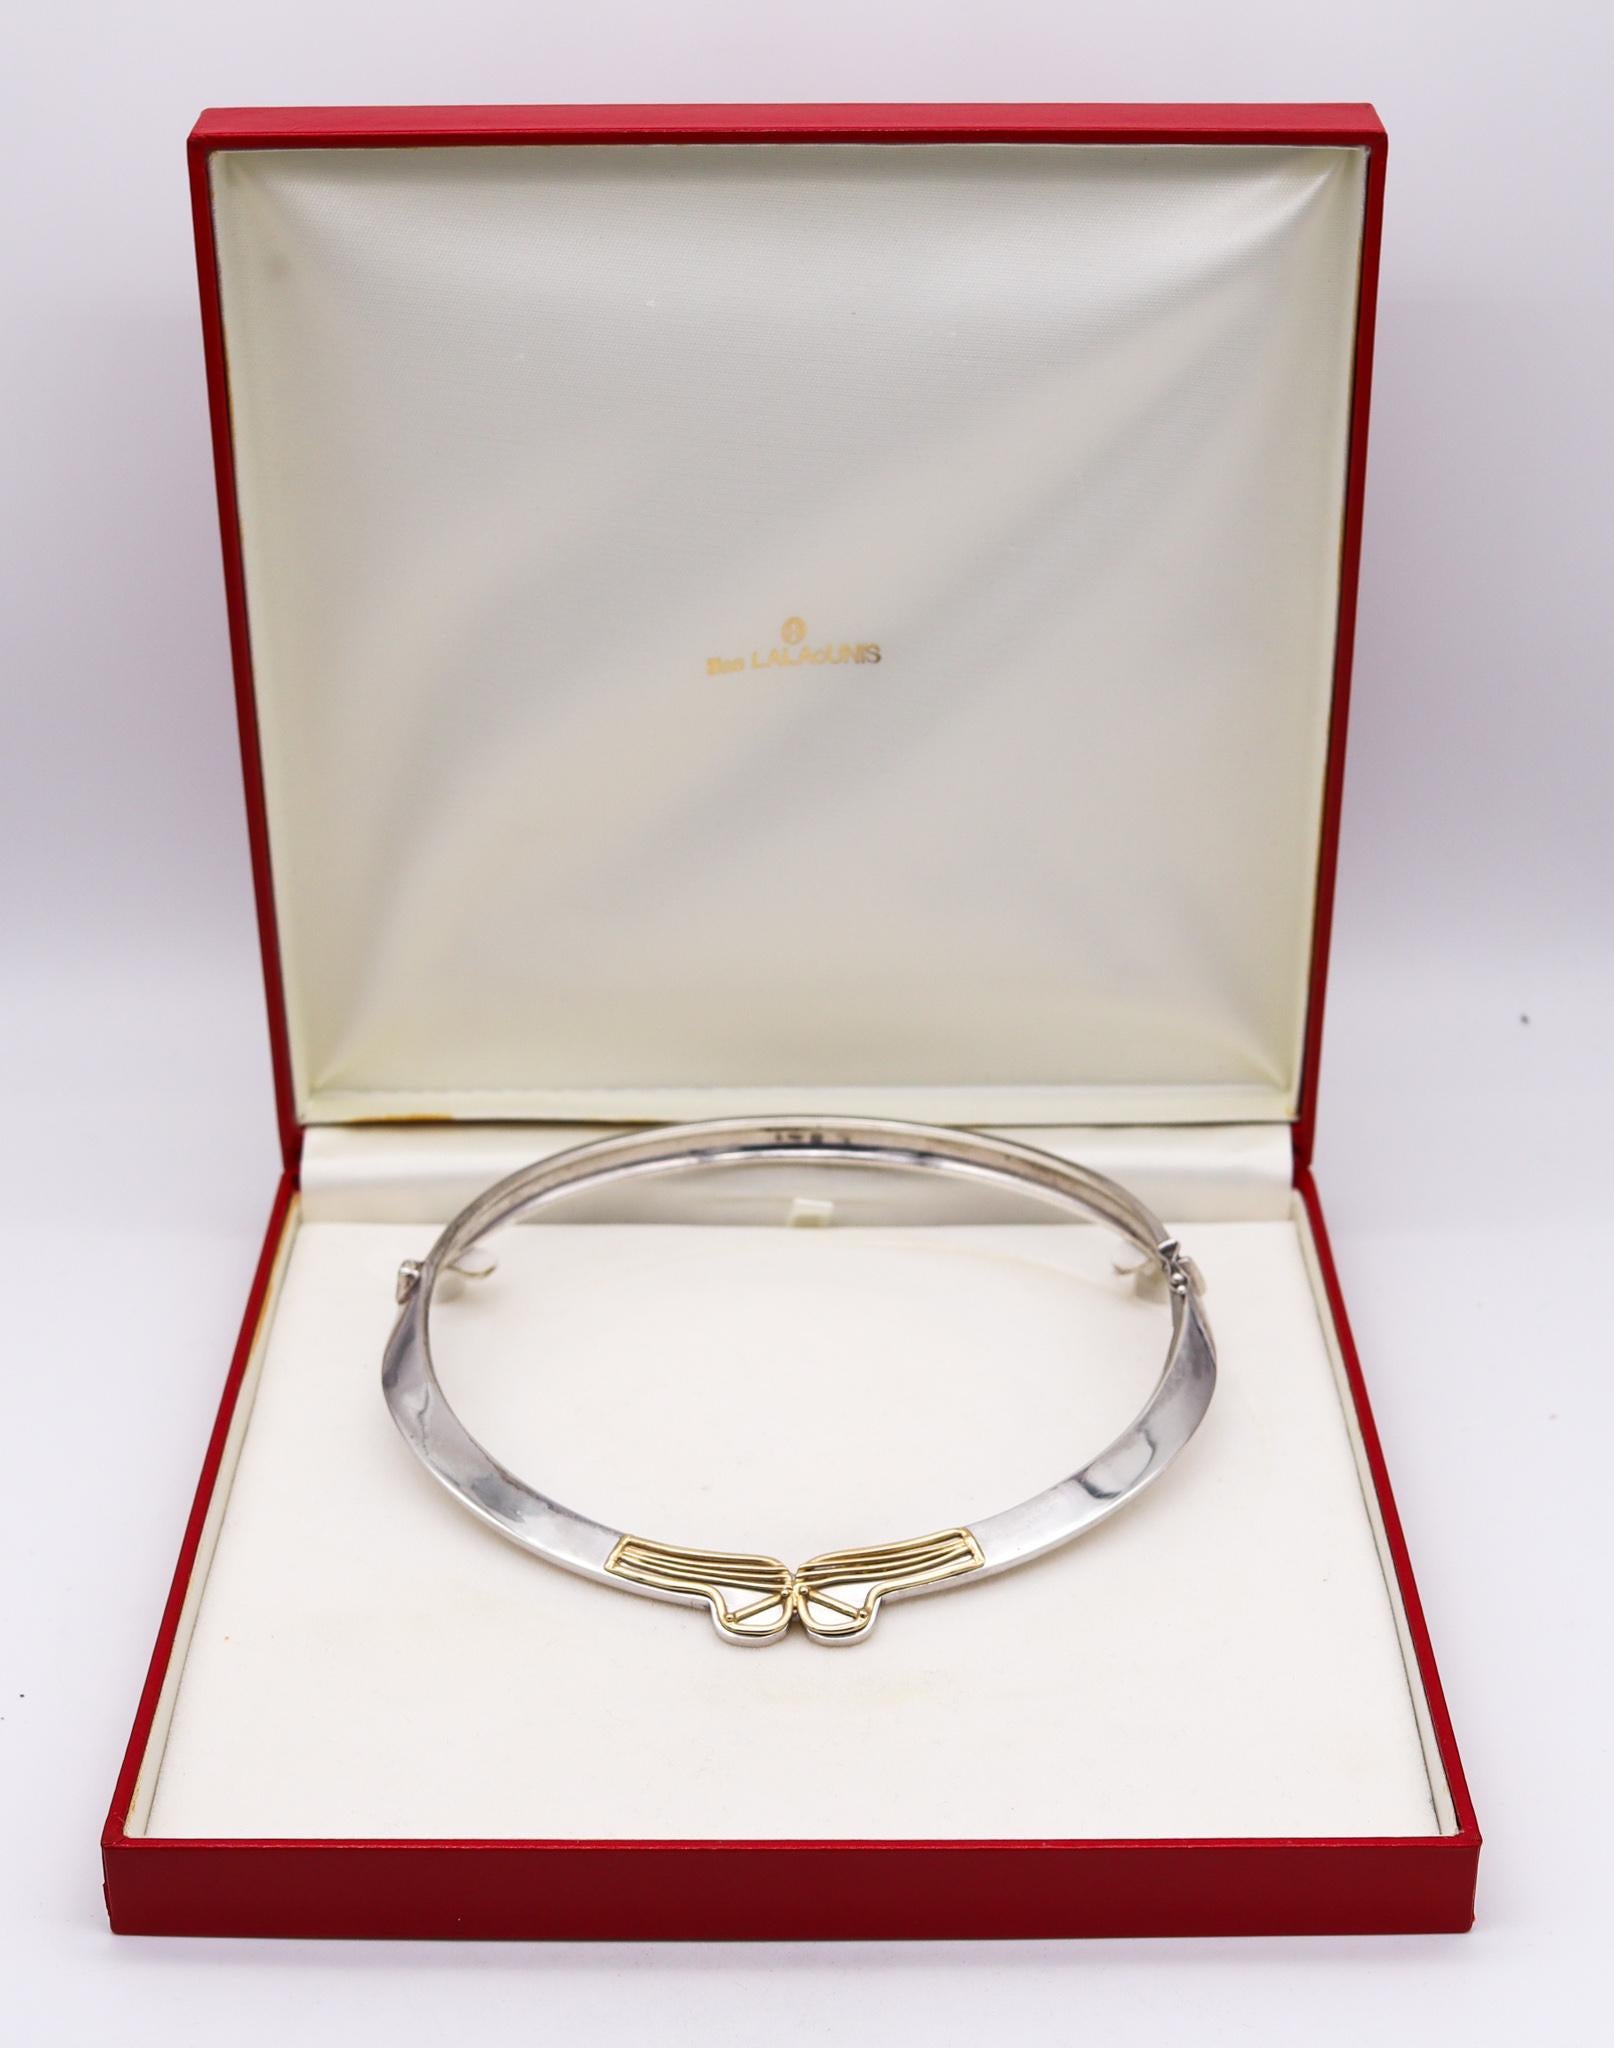 Halskette von Lalaounis entworfen.

Schlanke und elegante Halskette, die in den 1970er Jahren in Griechenland von dem Goldschmied Ilias Lalaounis entworfen wurde. Er wurde aus massivem 925er/999er Sterlingsilber und 18 Karat Gelbgold gefertigt. Die